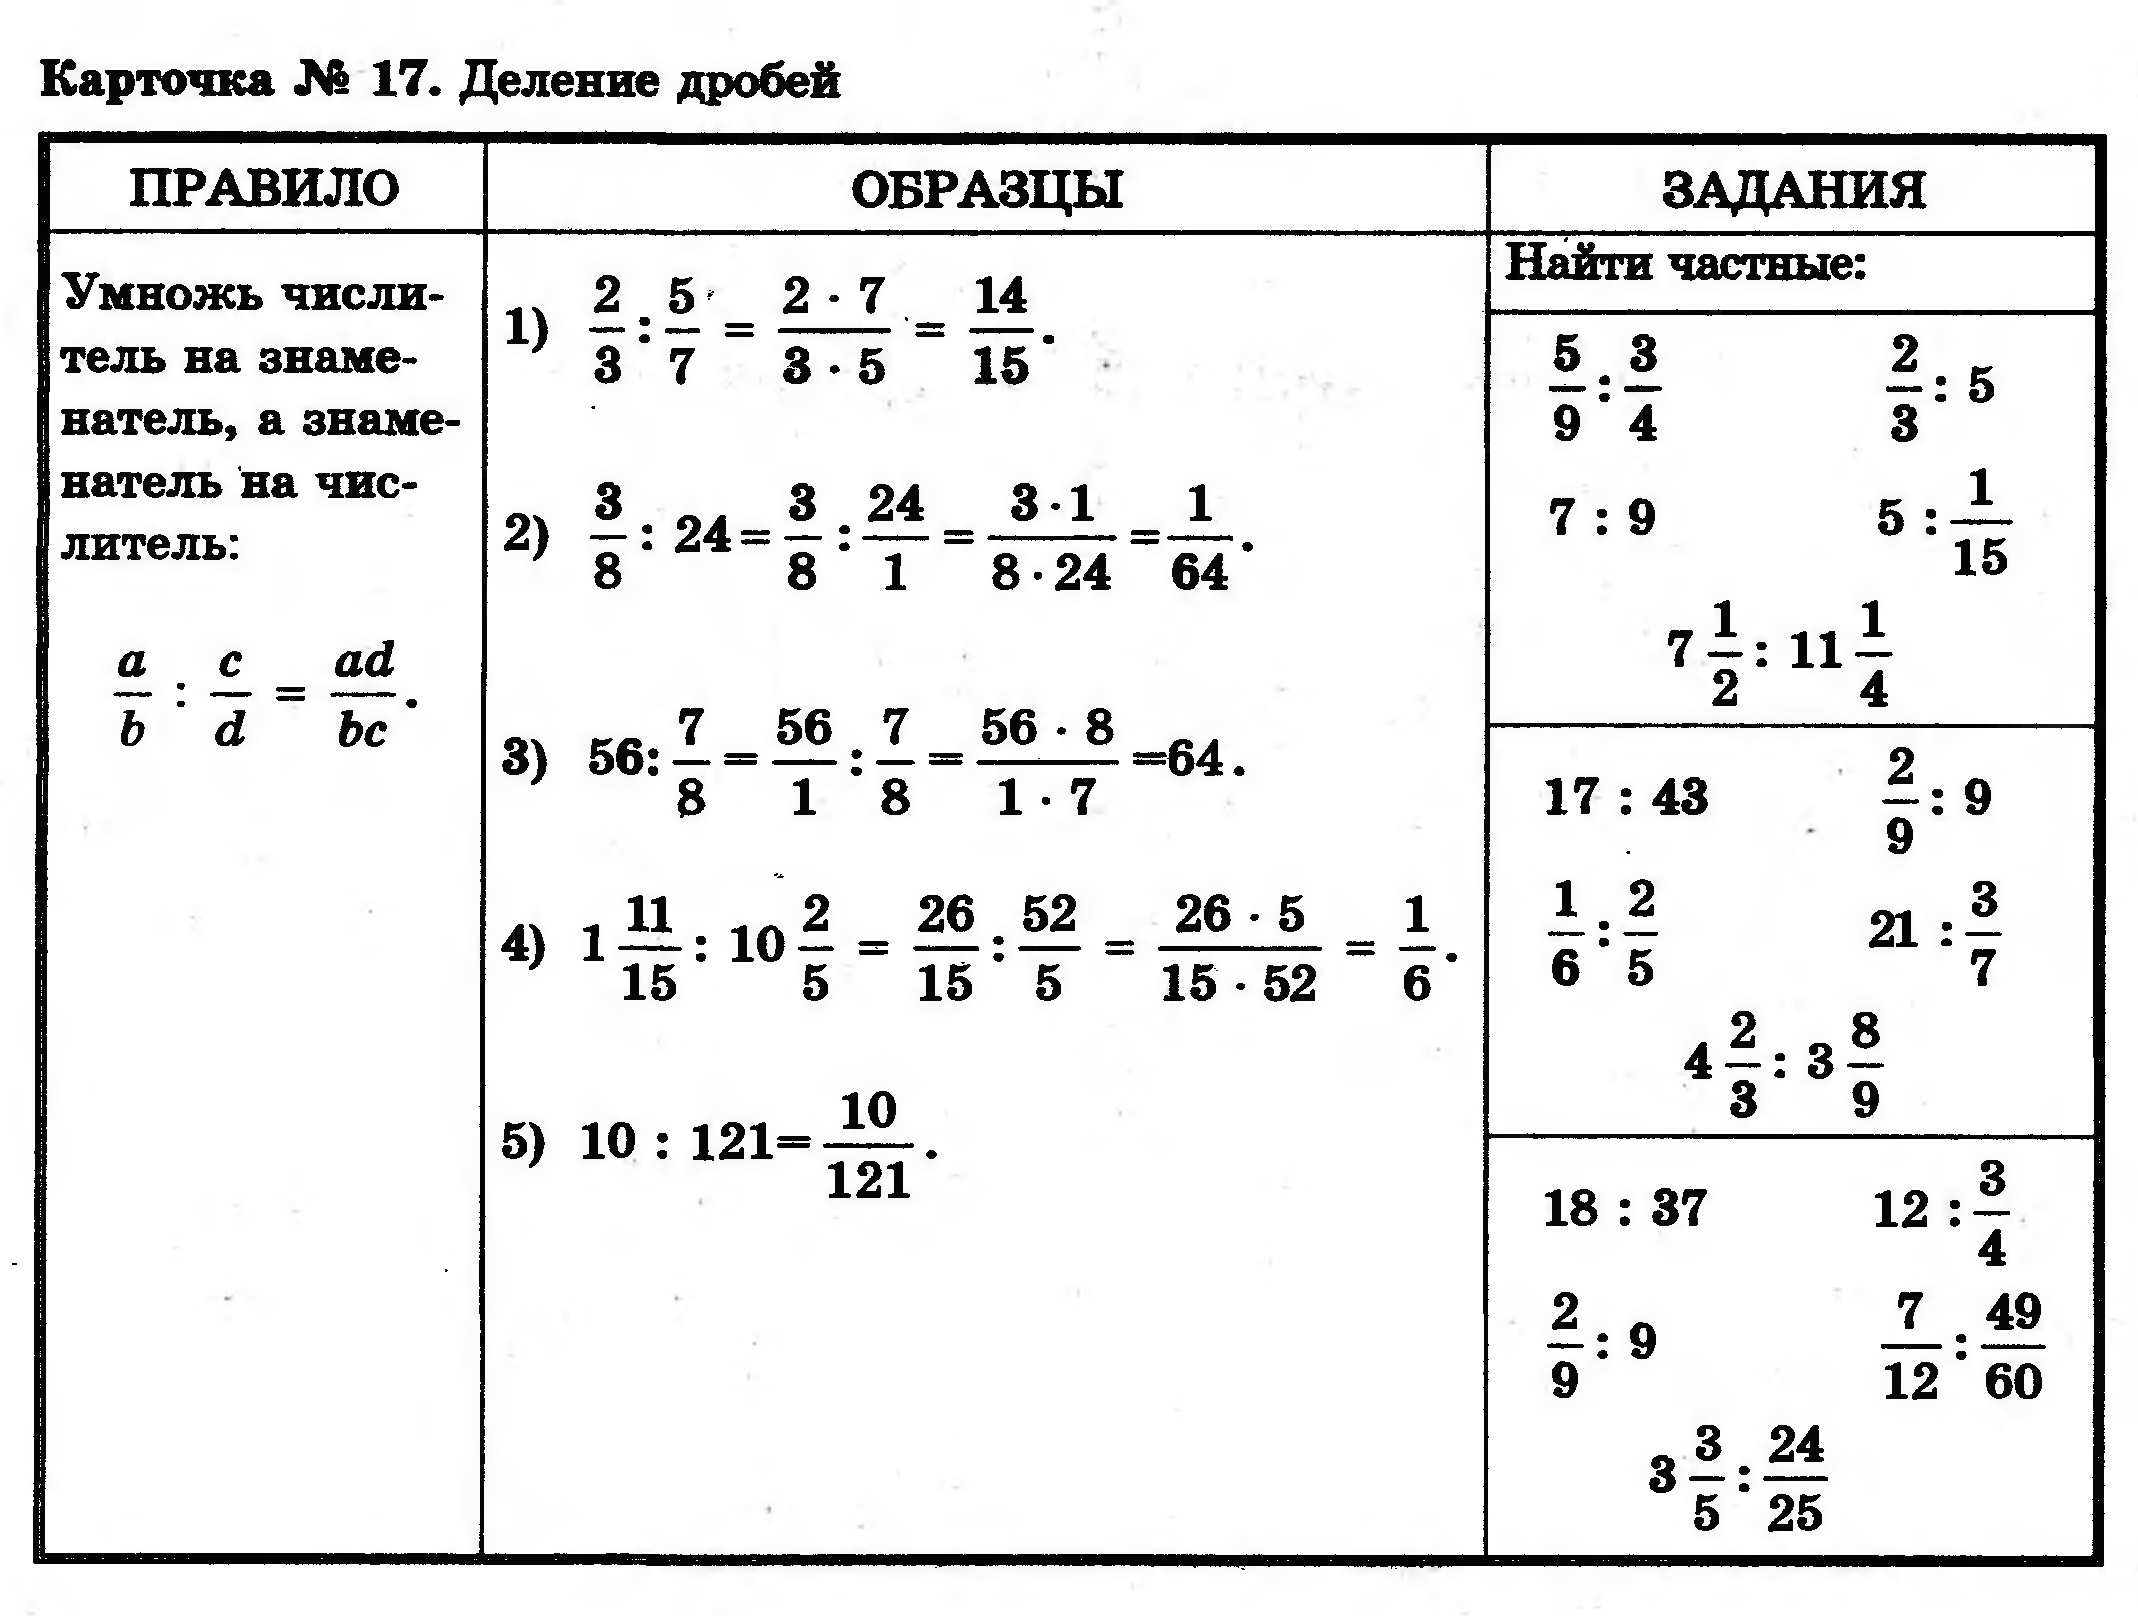 Примеры по математике 6 класс деление. Проверочная работа по математике 5 класс умножение дробей. Сложение и вычитание десятичных дробей 6 класс задания. Карточки по математике 5 класс дроби сложение и вычитание. Умножение дроби на натуральное число 5 класс задания.